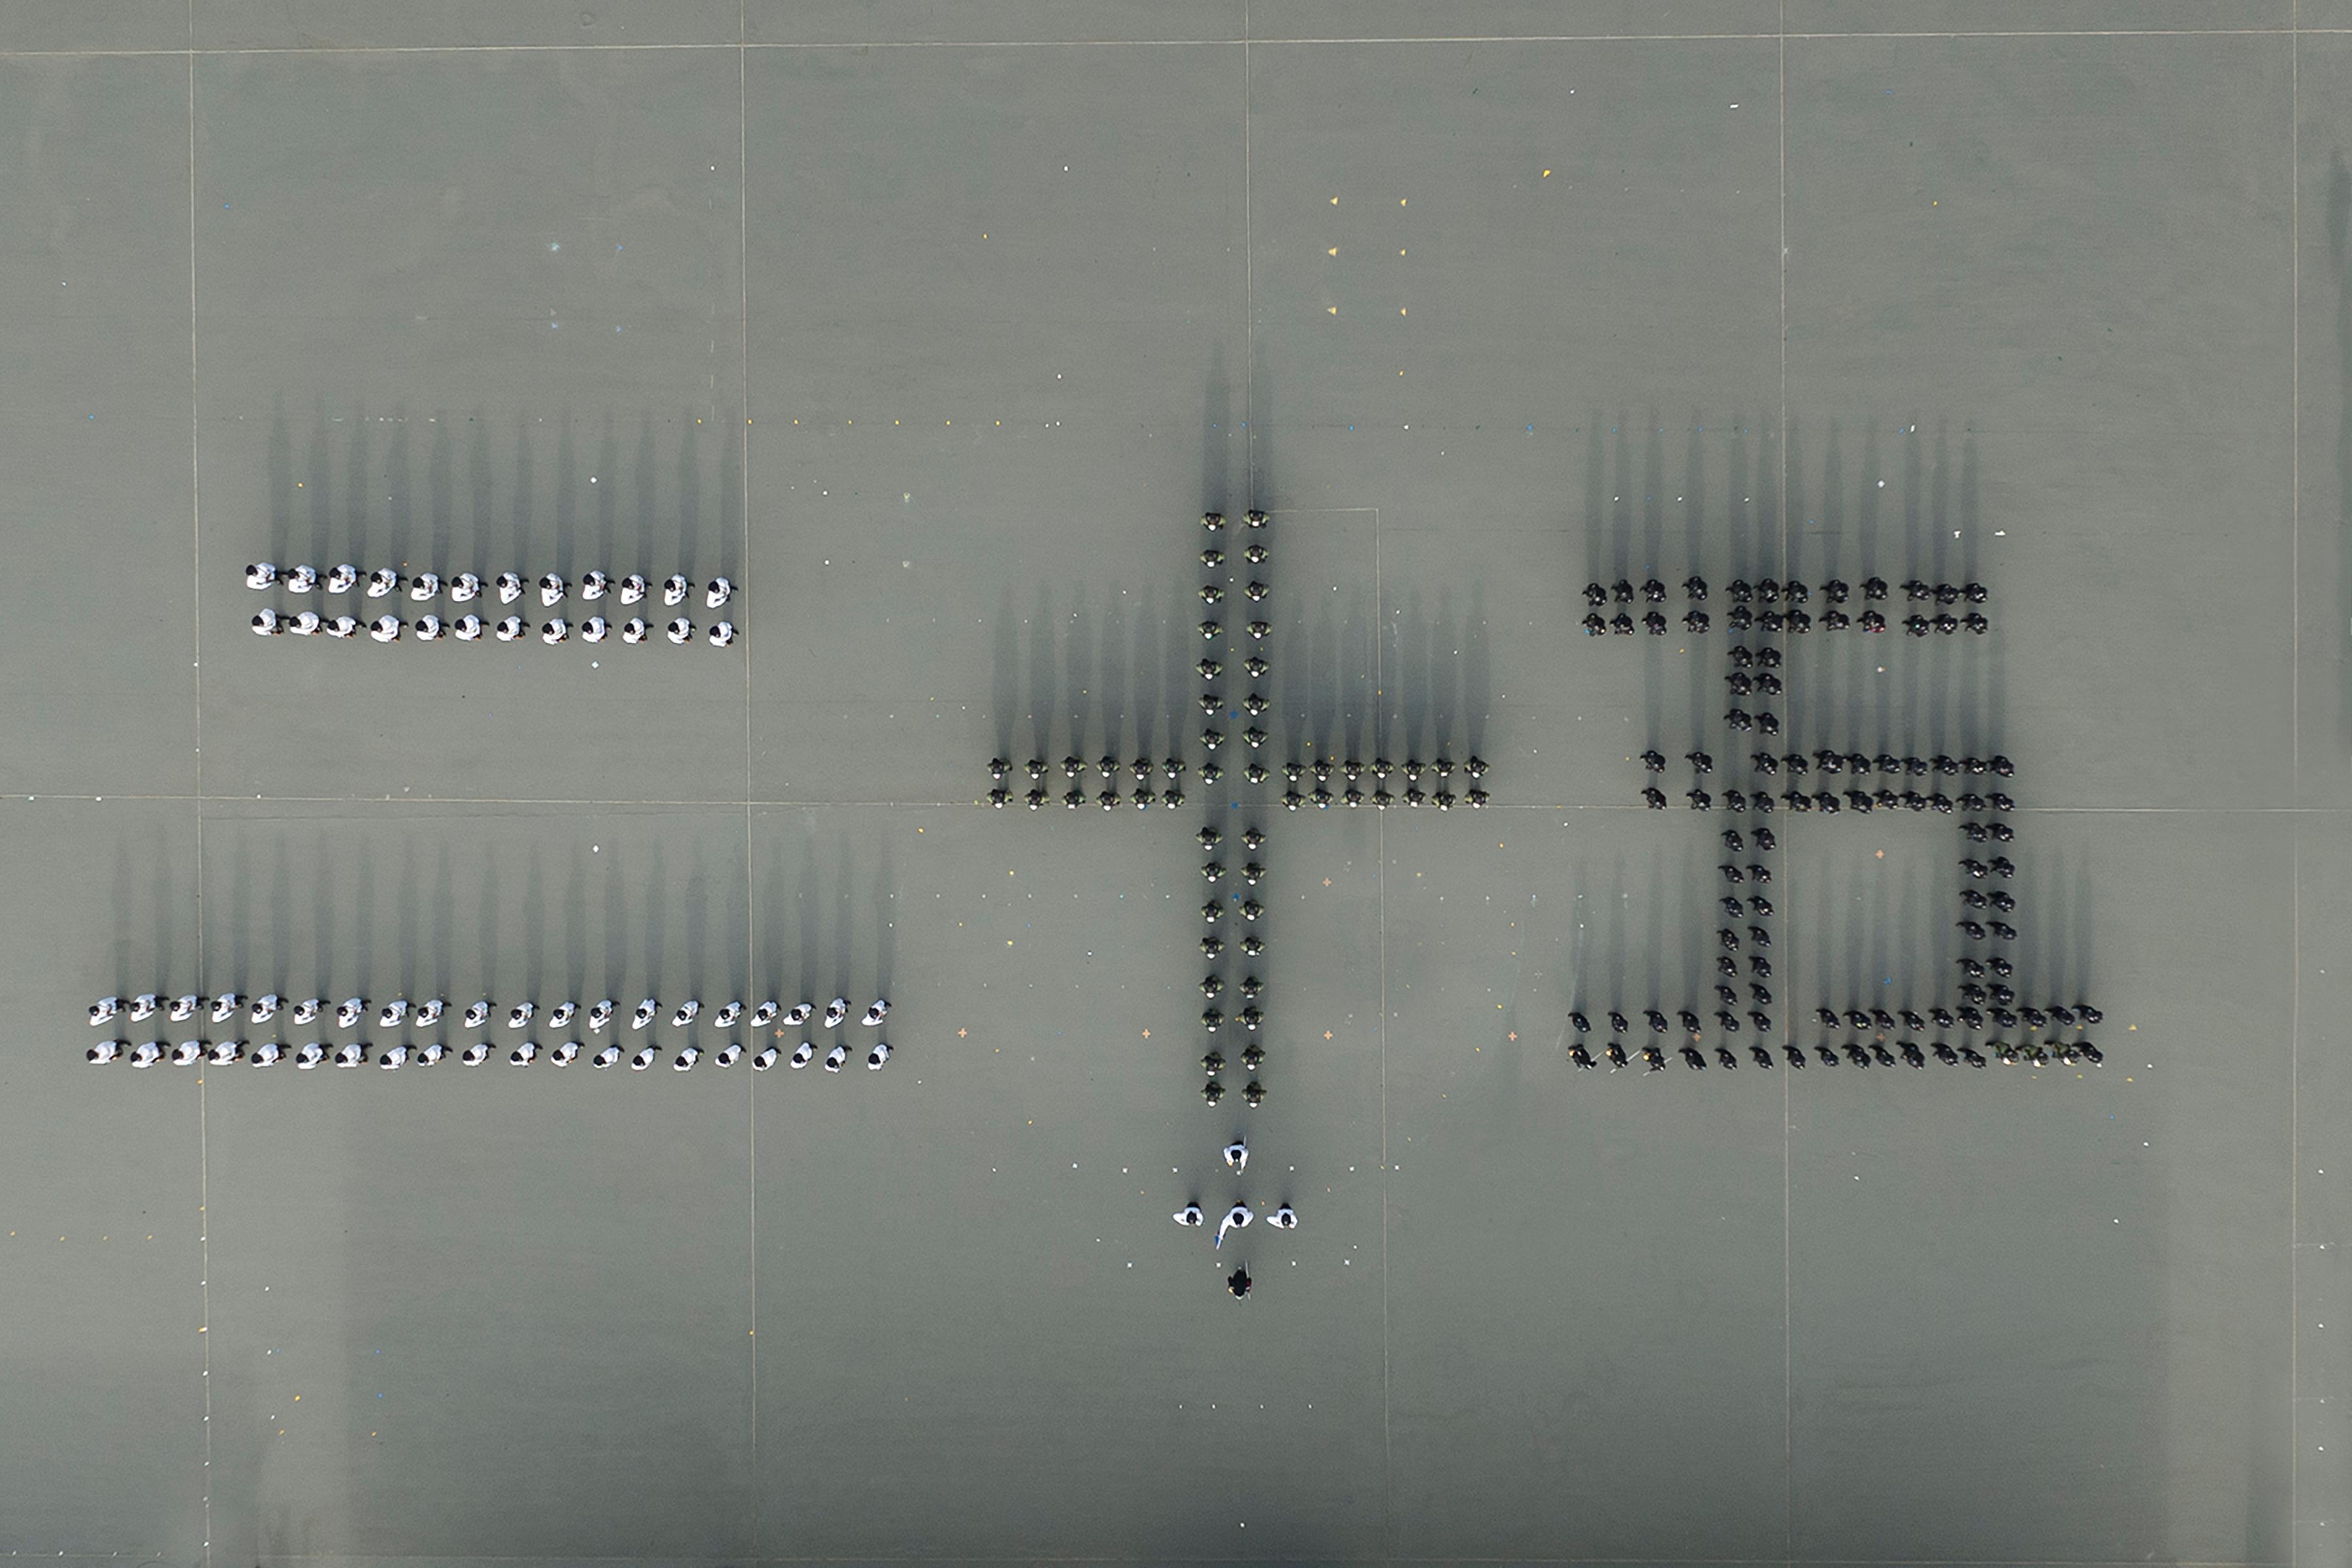 图示会操队伍以中式步操排列出中国数字「二十五」，以庆祝香港特别行政区成立二十五周年。